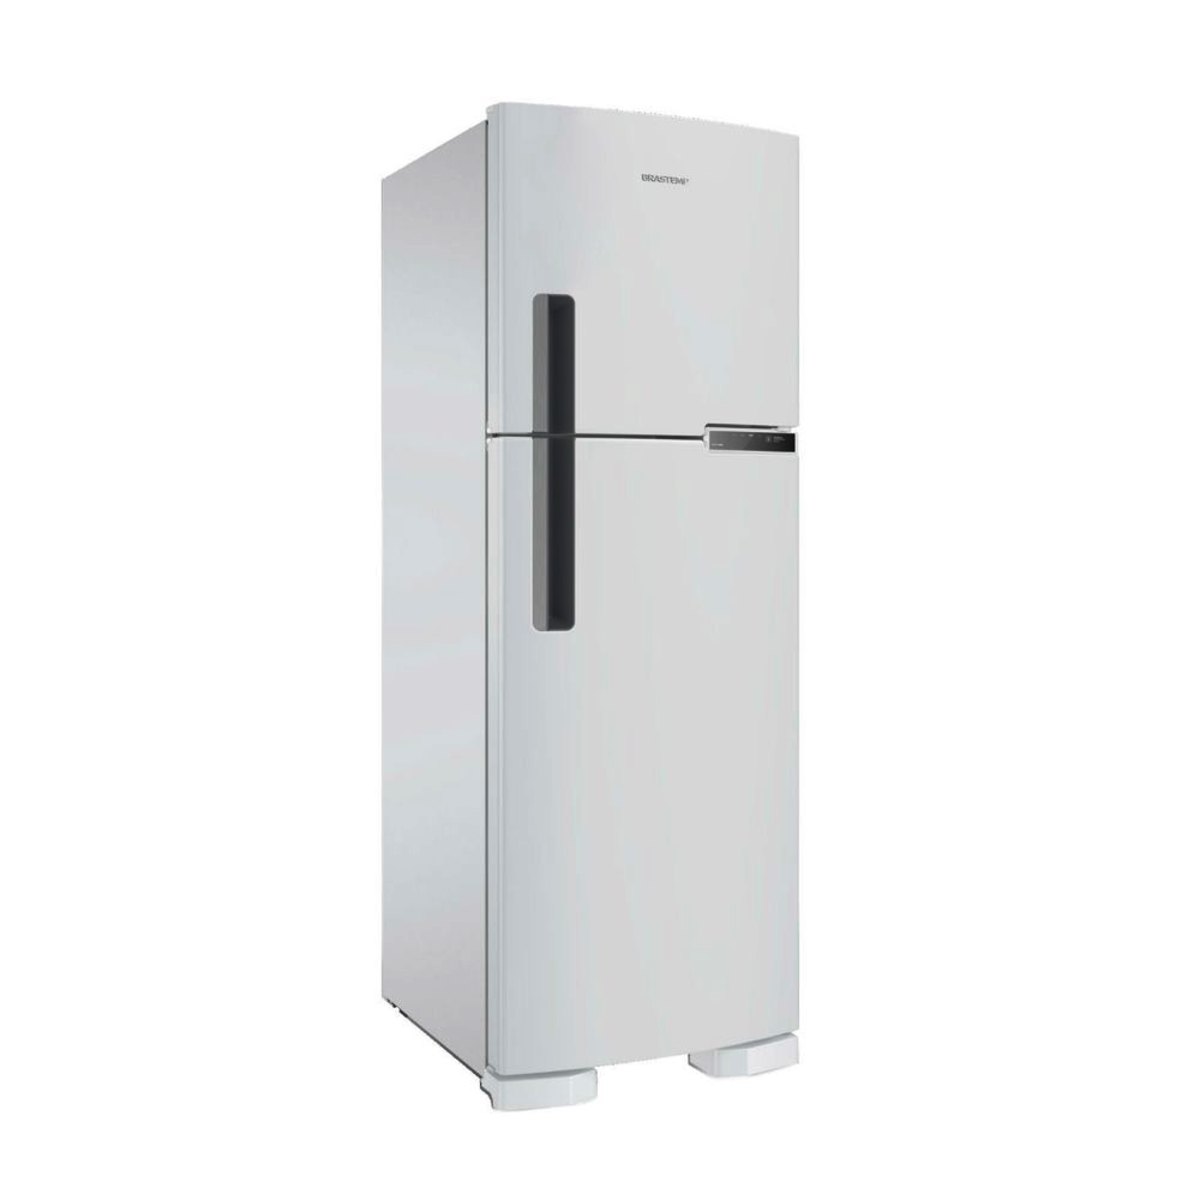 Geladeira Refrigerador Brastemp 375 Litros 2 Portas Frost Free Brm44hb Branco